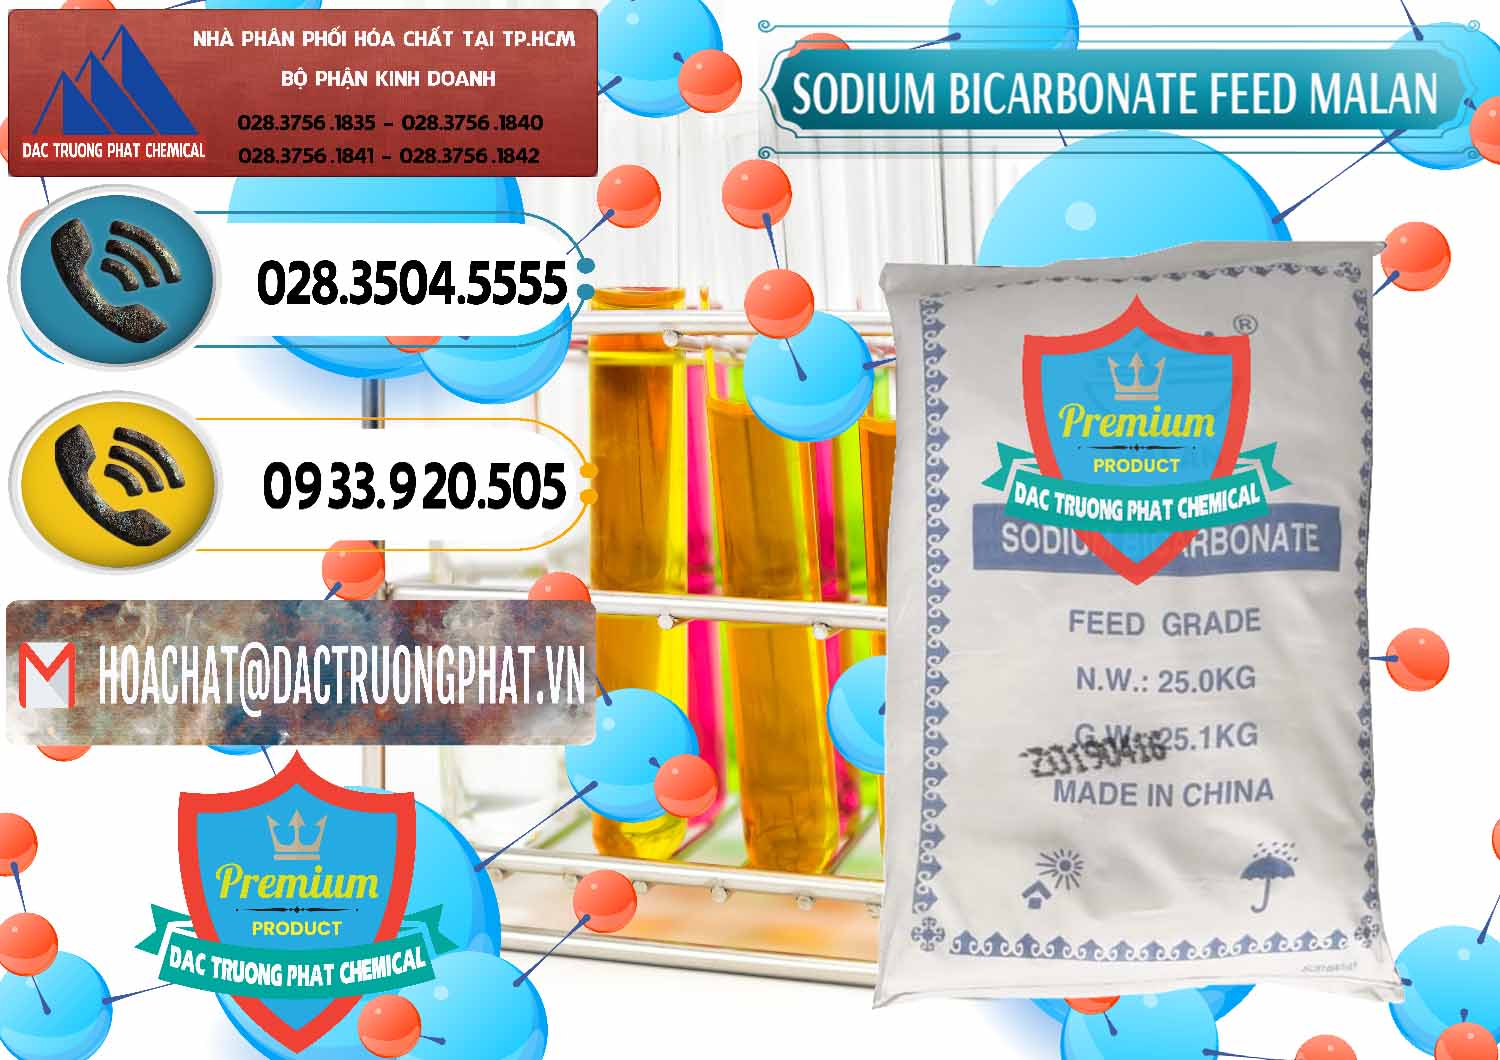 Đơn vị bán - cung ứng Sodium Bicarbonate – Bicar NaHCO3 Feed Grade Malan Trung Quốc China - 0262 - Nơi bán - phân phối hóa chất tại TP.HCM - hoachatdetnhuom.vn